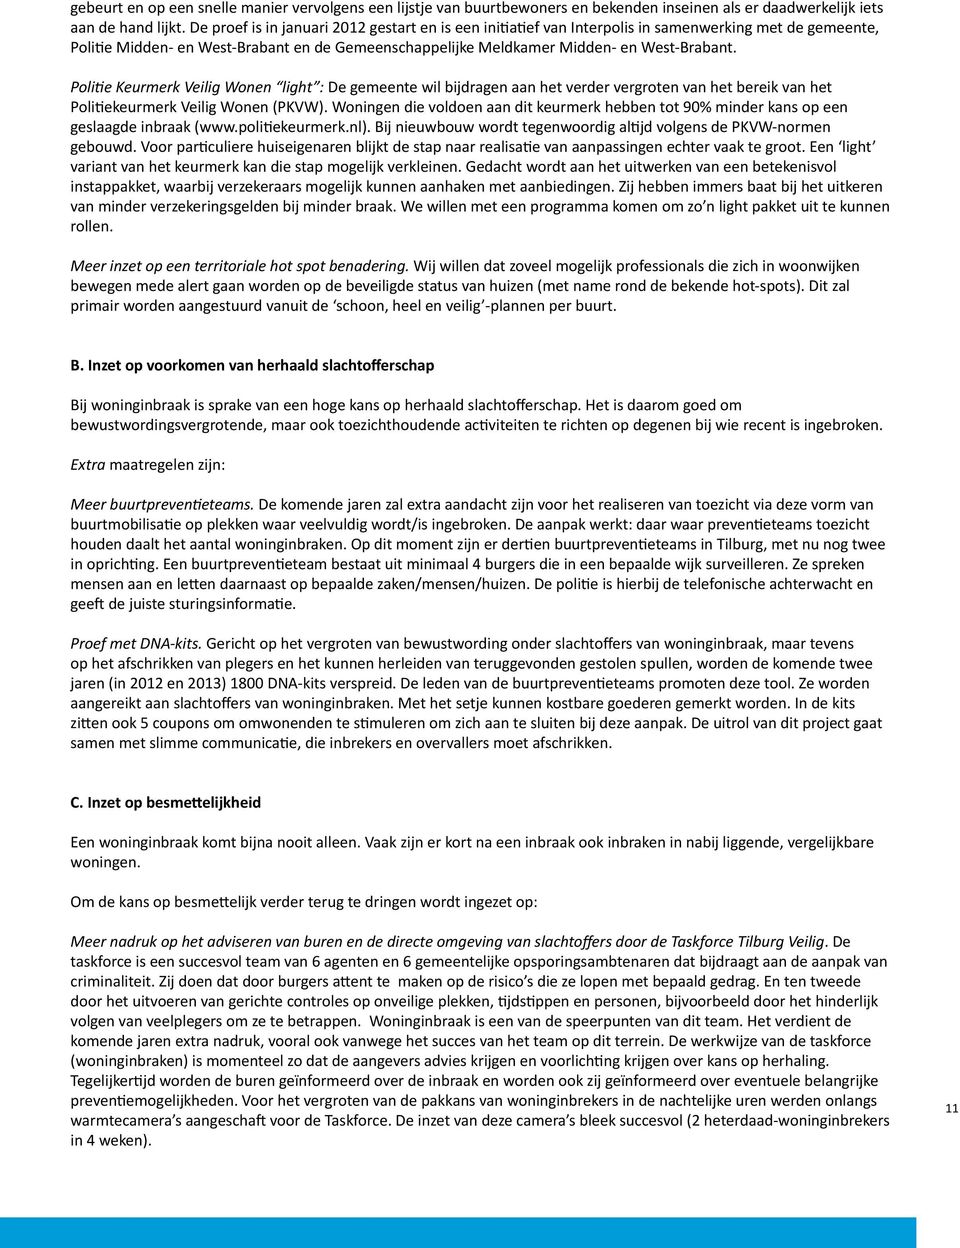 Politie Keurmerk Veilig Wonen light : De gemeente wil bijdragen aan het verder vergroten van het bereik van het Politiekeurmerk Veilig Wonen (PKVW).